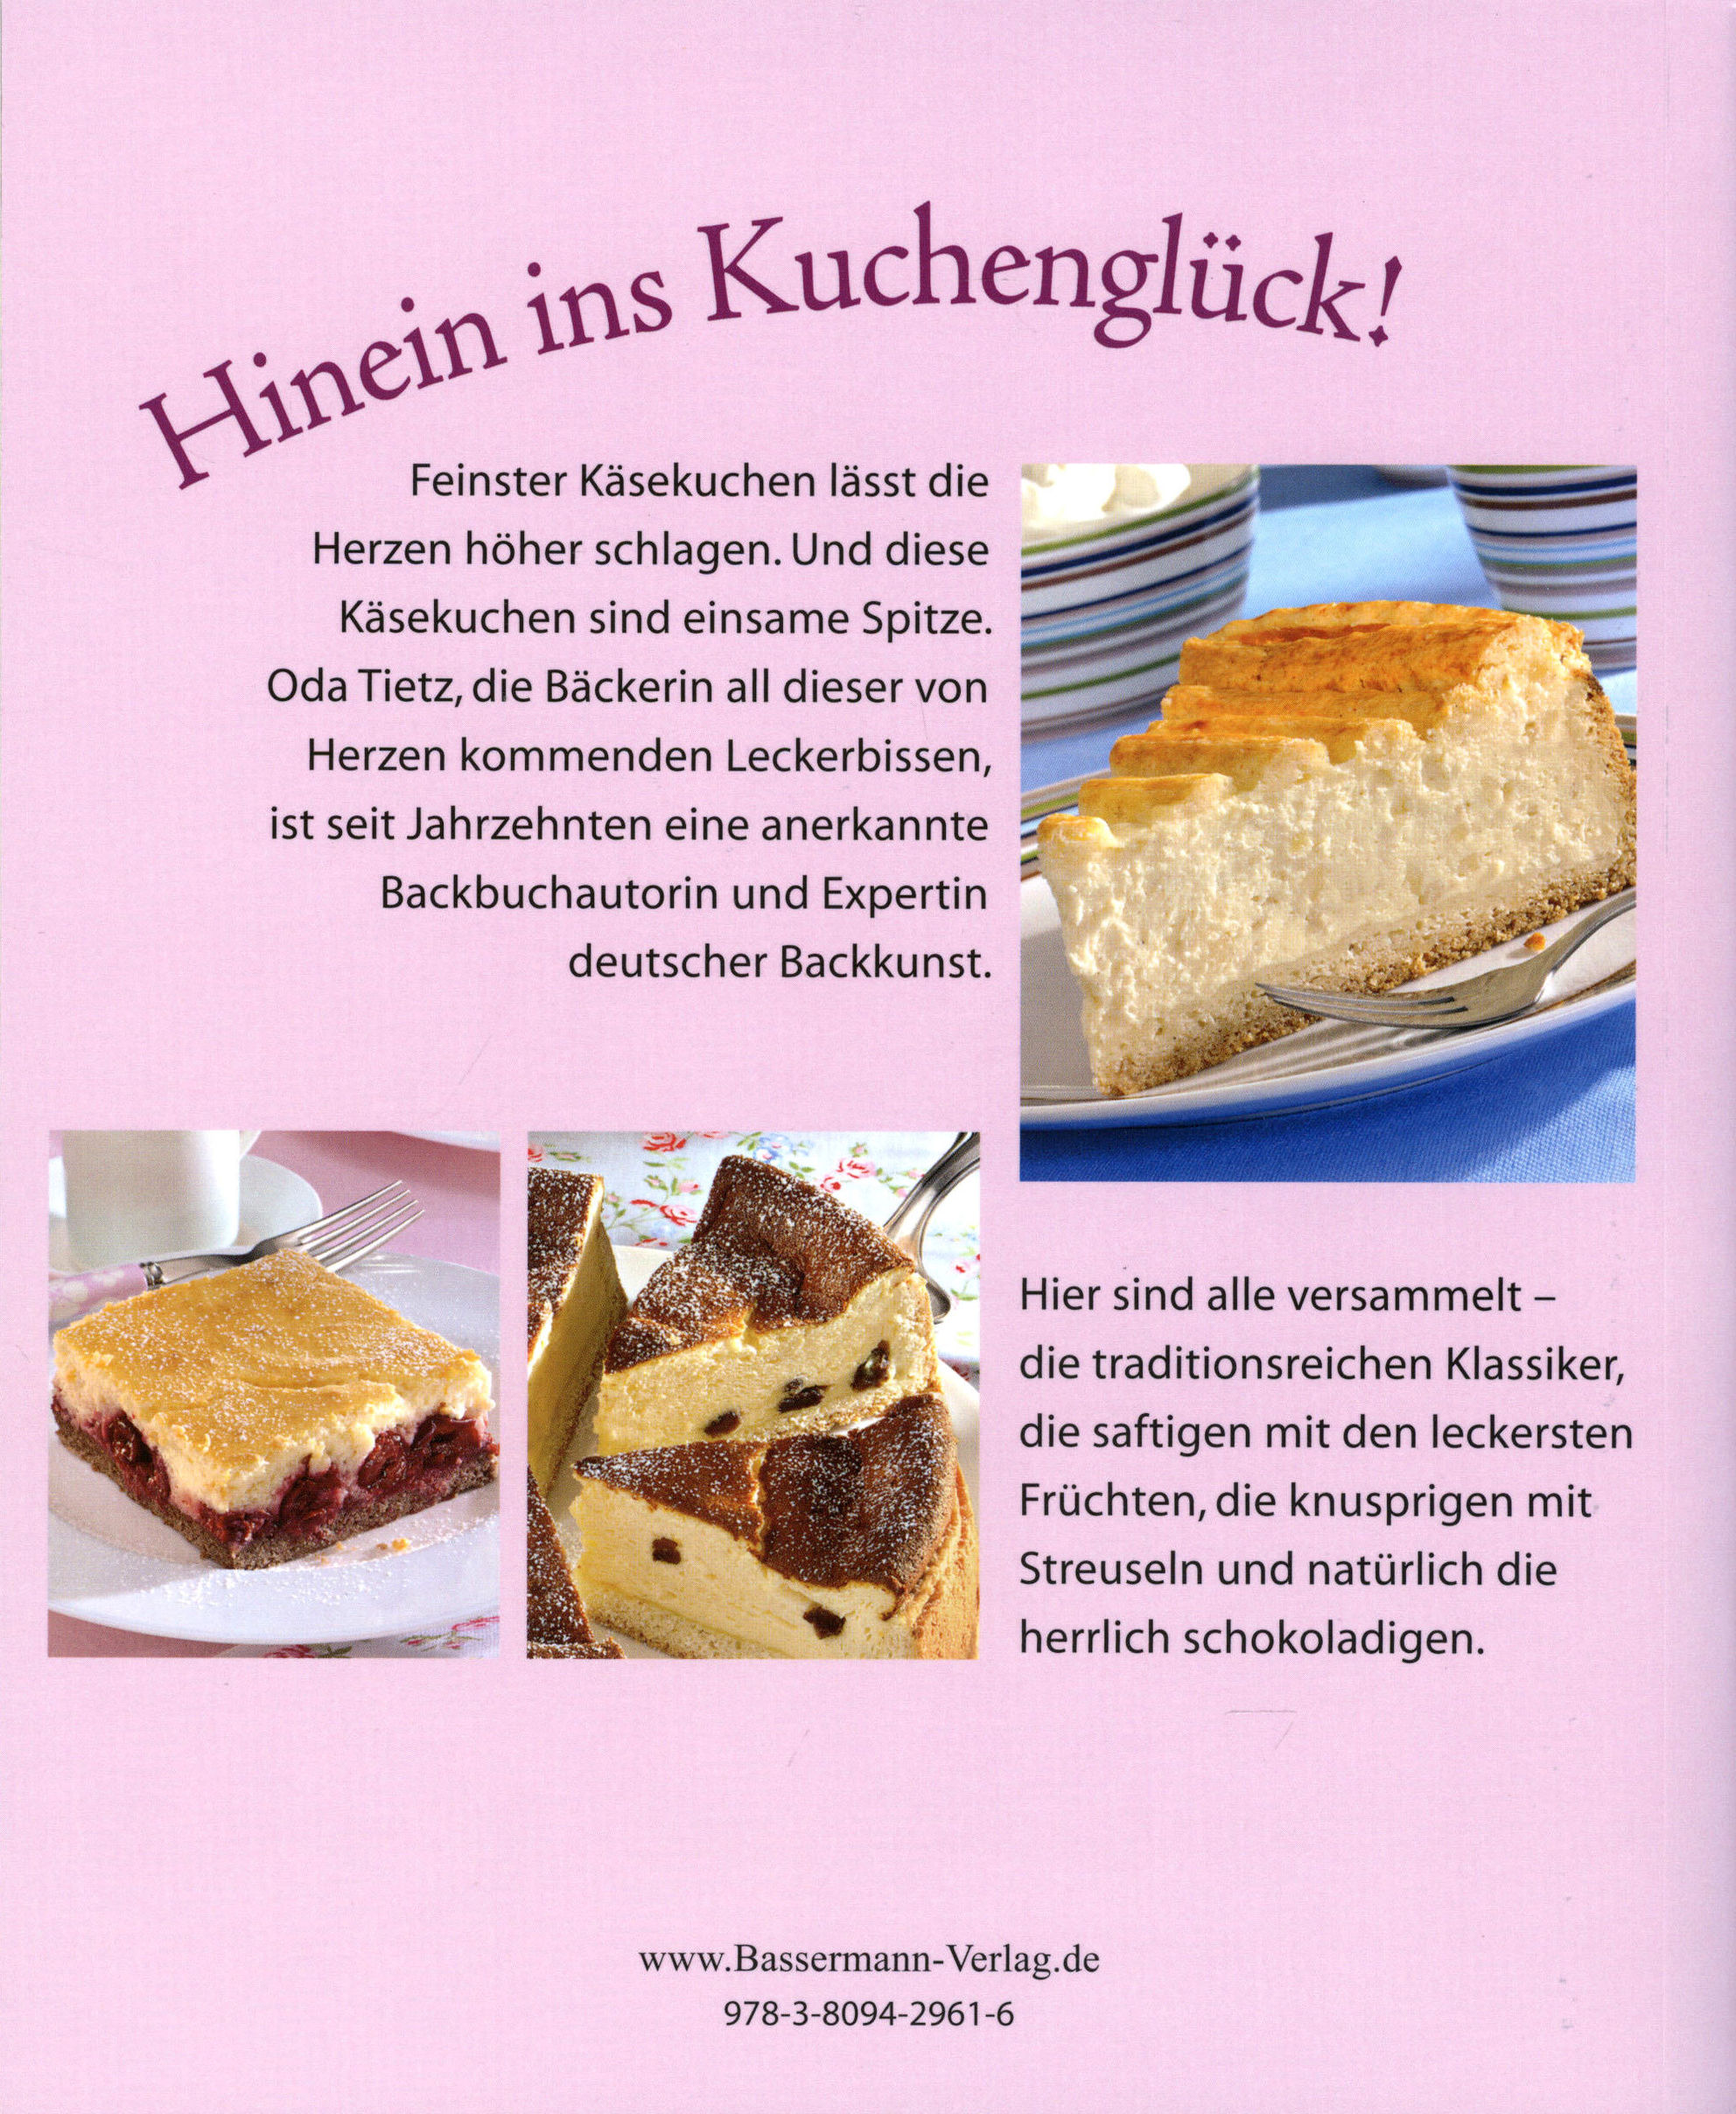 Kleine Käsekuchen vom Blech, Rezeptbuch inklusive Backform - Kommentare -  Weltbild.at